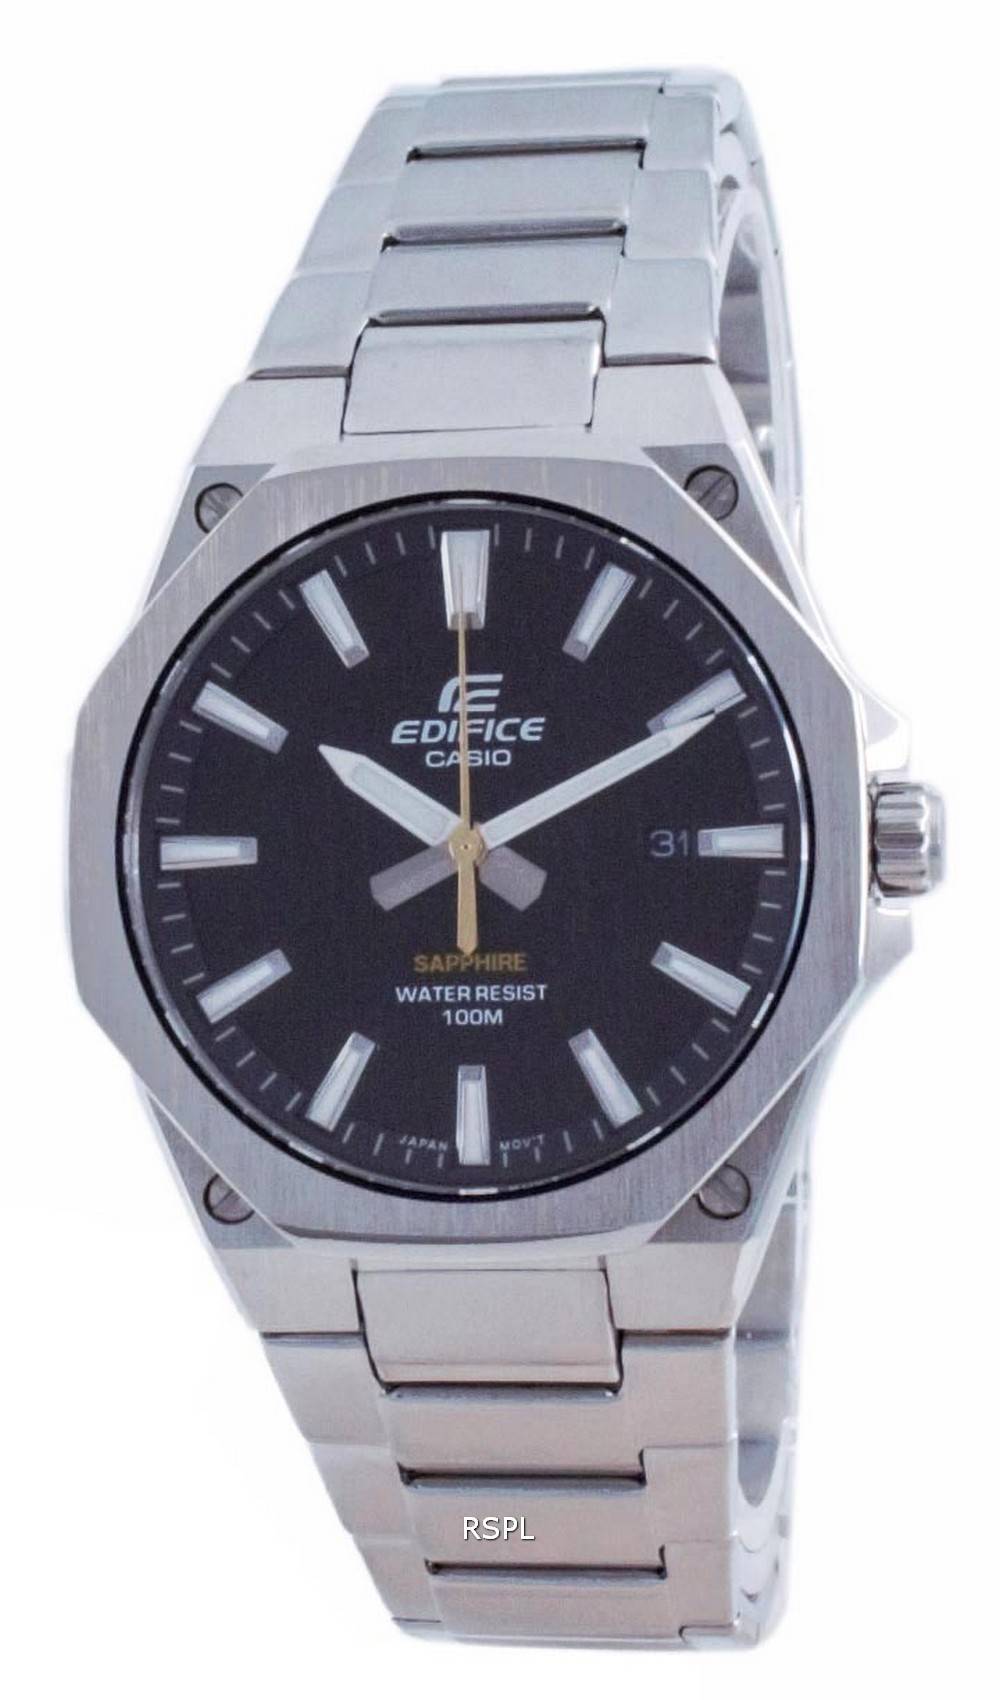 カシオ エディフィス スリム ライン ブラック ダイヤル クォーツ EFR-S108D-1A 100M メンズ 腕時計